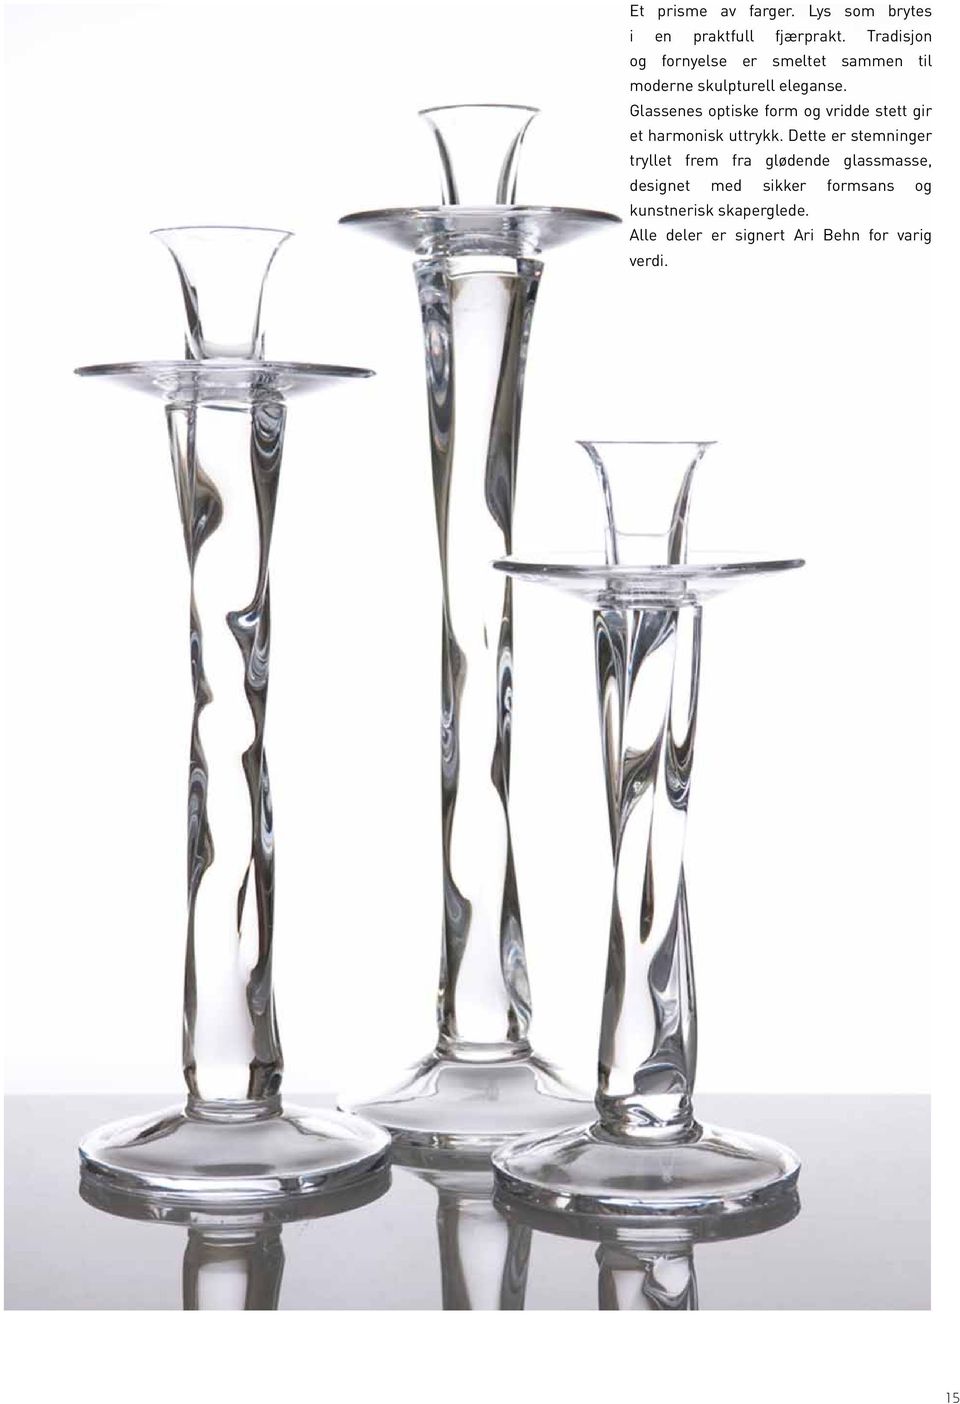 Glassenes optiske form og vridde stett gir et harmonisk uttrykk.